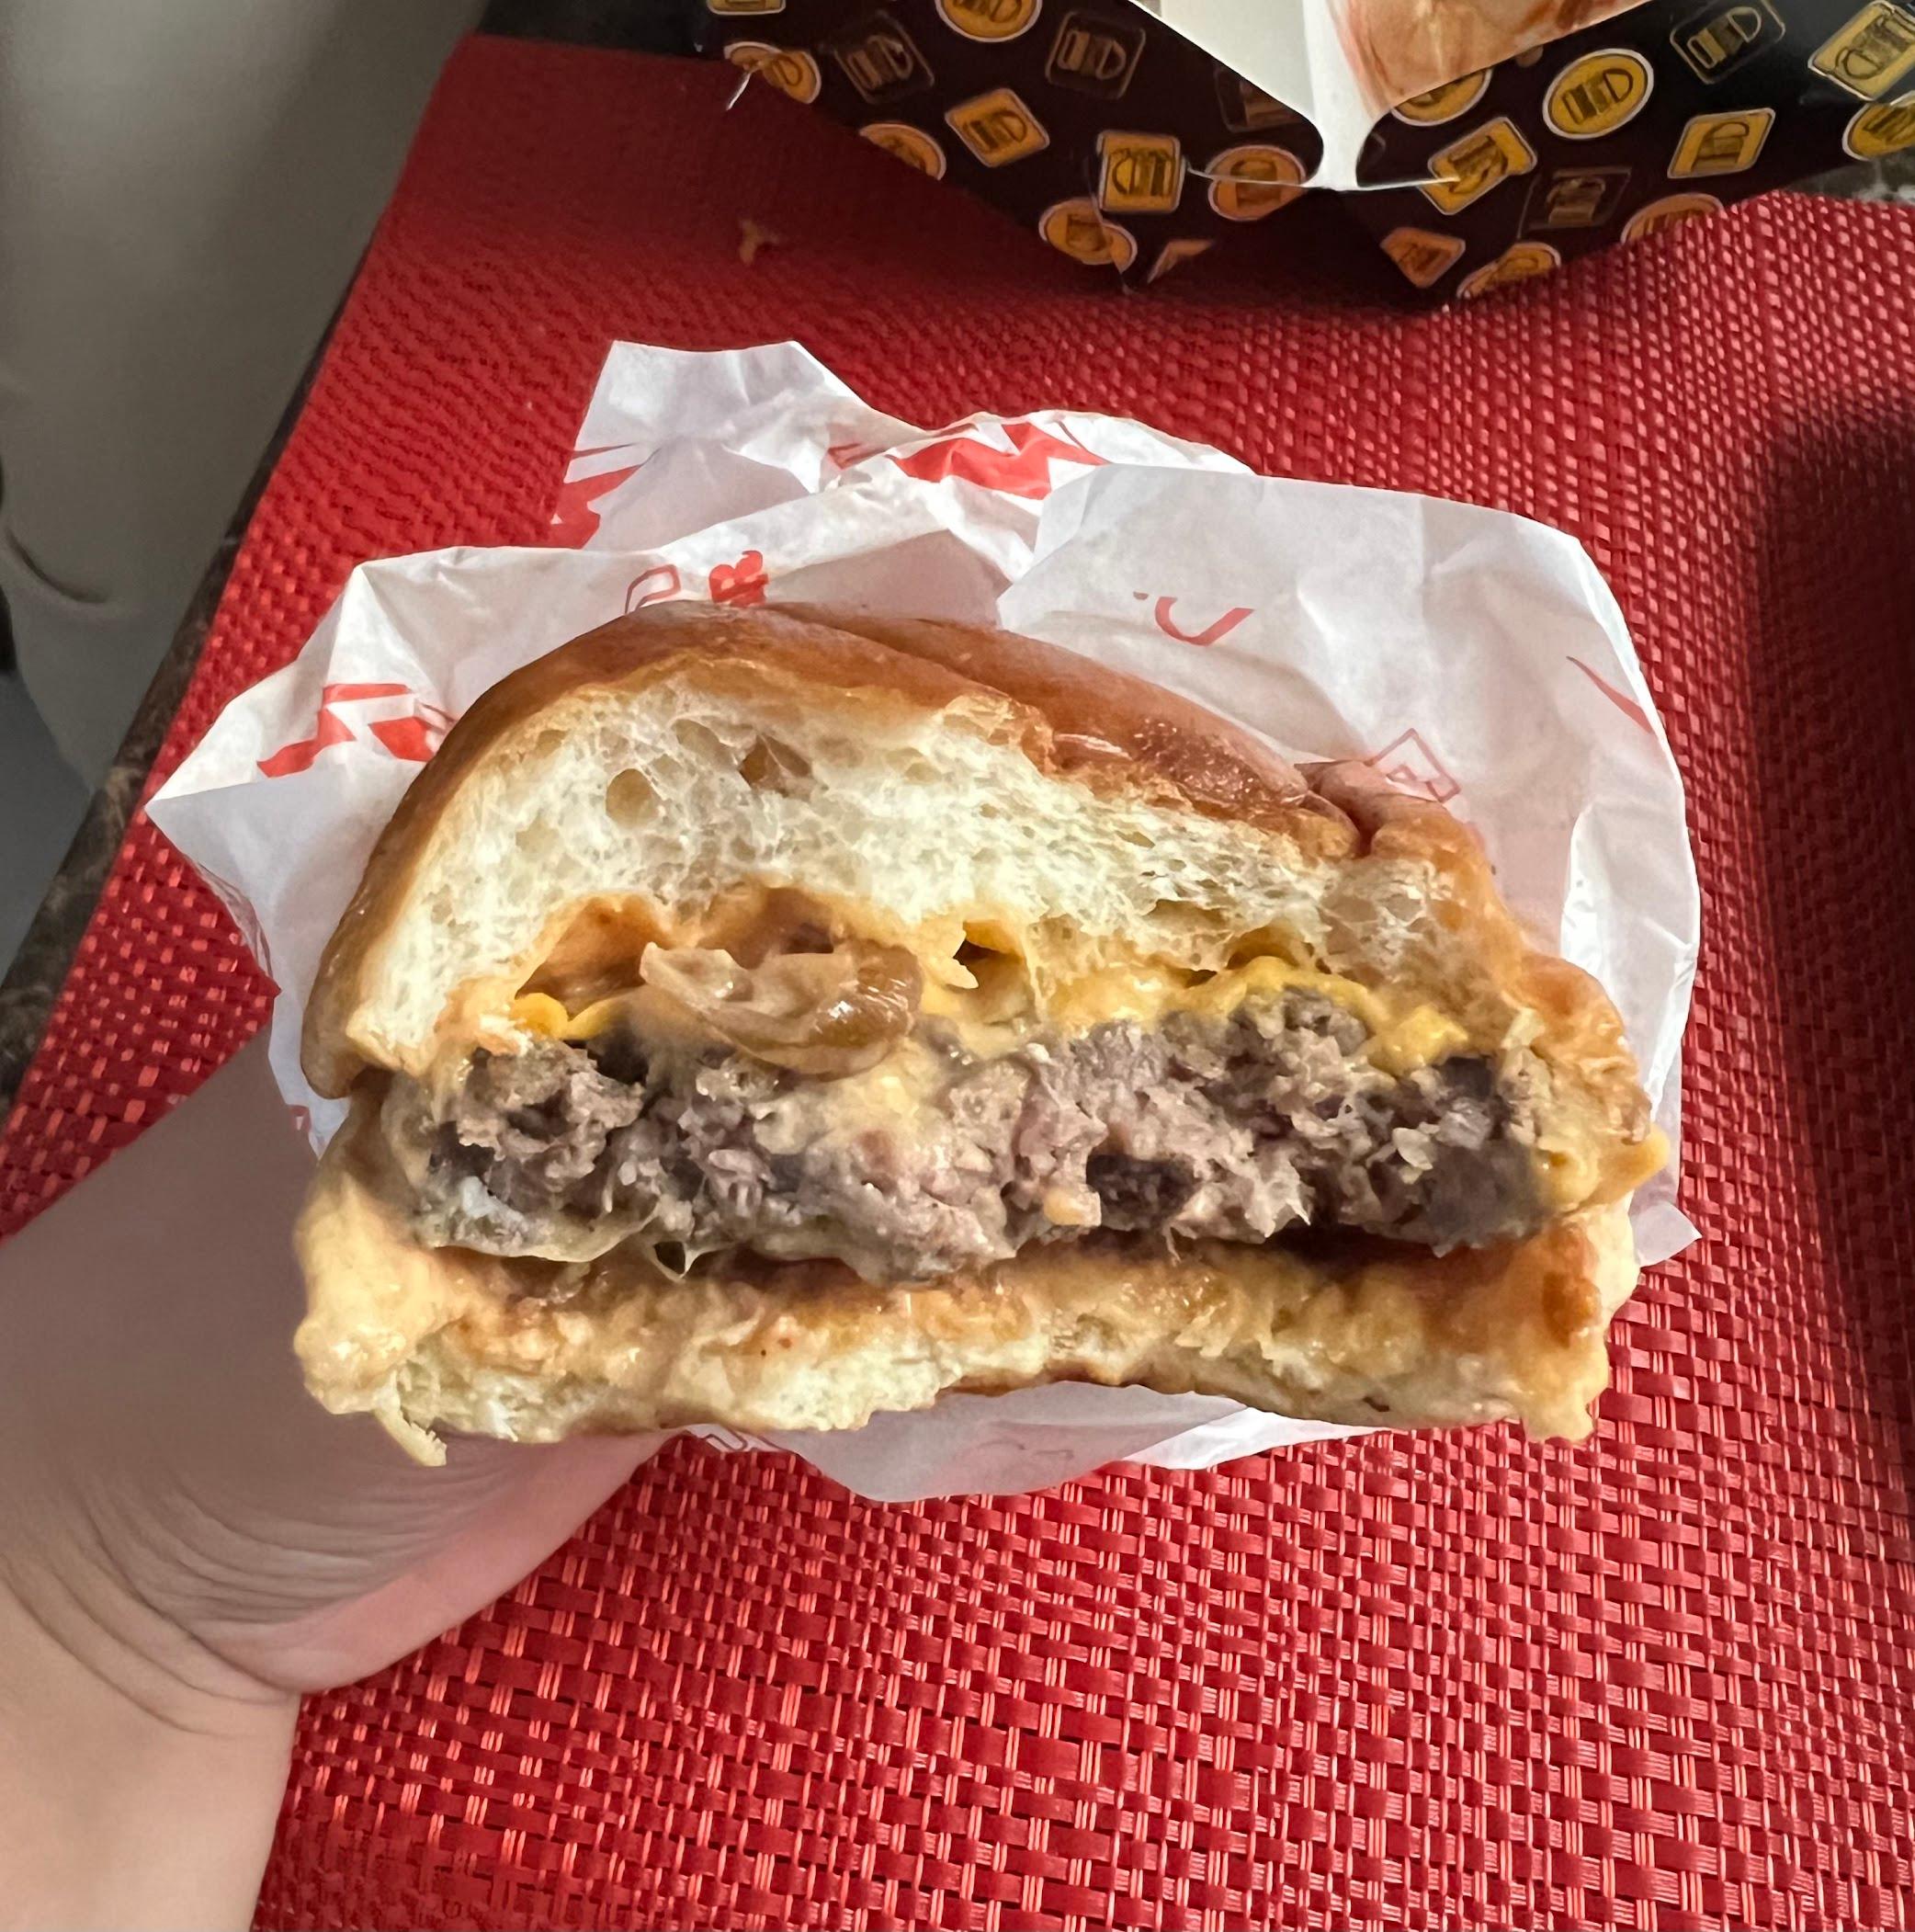 Flash Burger X Kopi Dari Hati - Pajajaran review